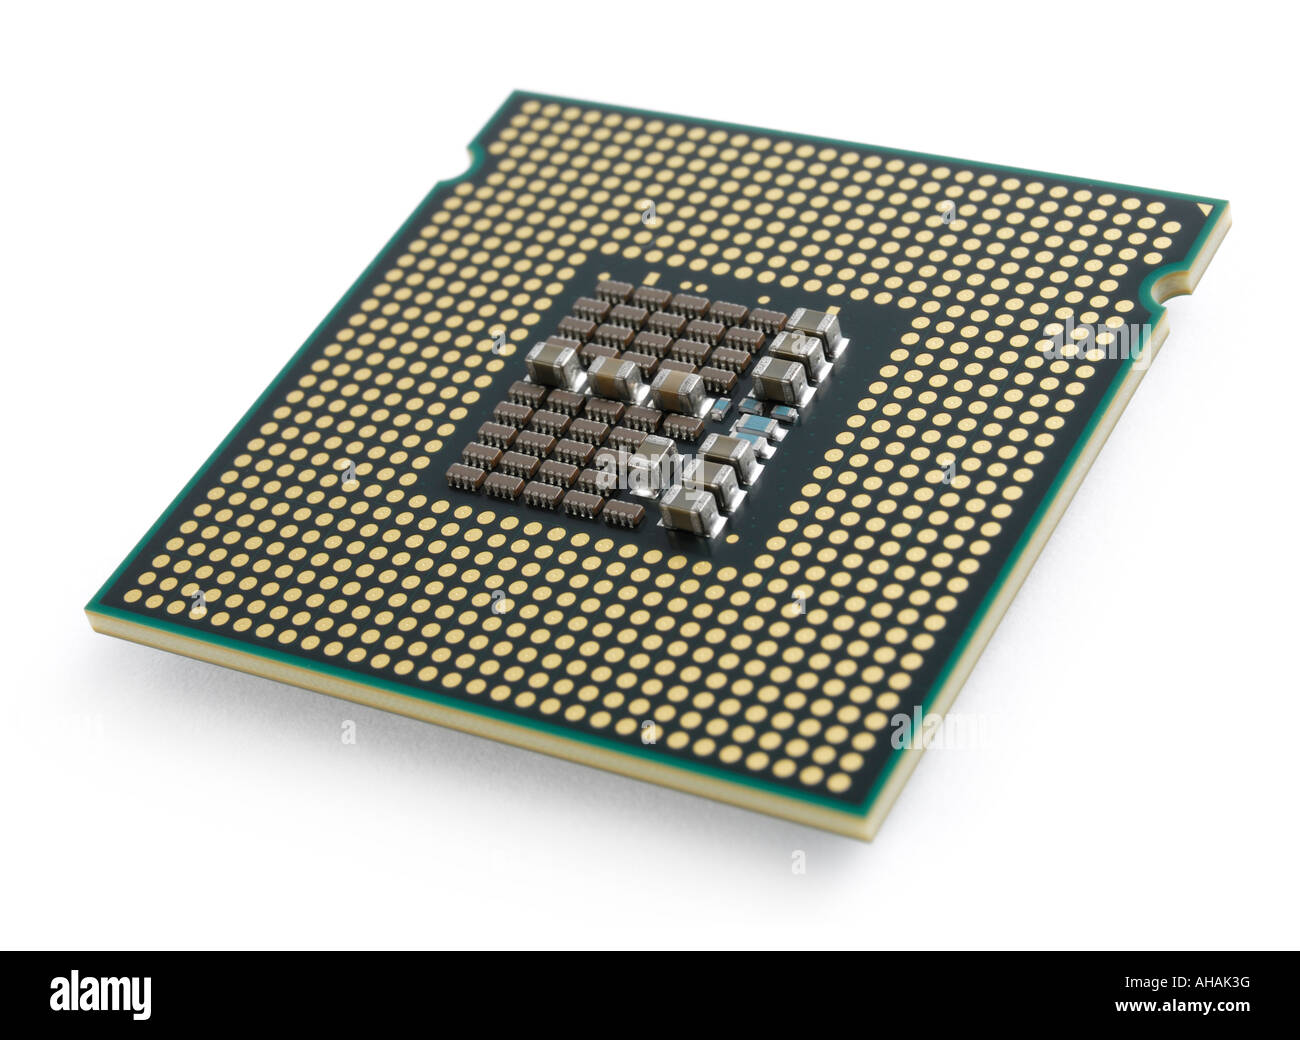 Intel Core 2 Quad Q6600 CPU Stock Photo